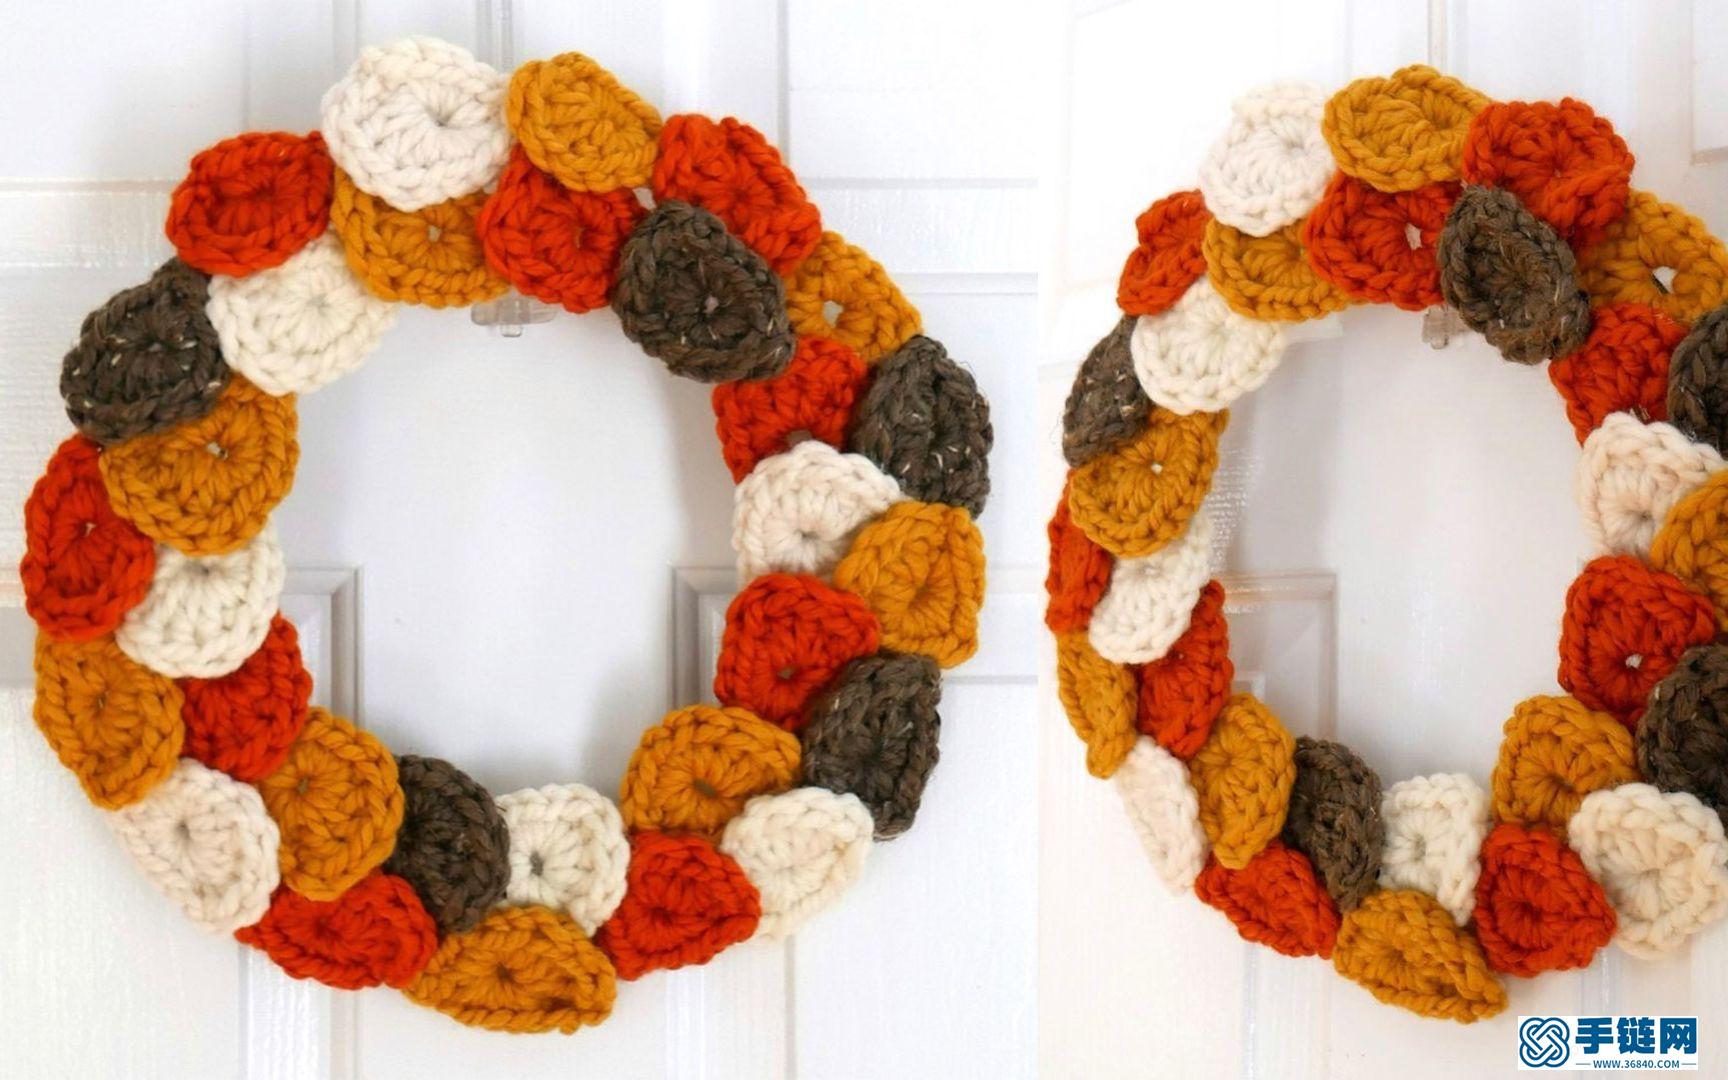 钩针编织美丽的落叶花环装饰，落在墙面上的秋色